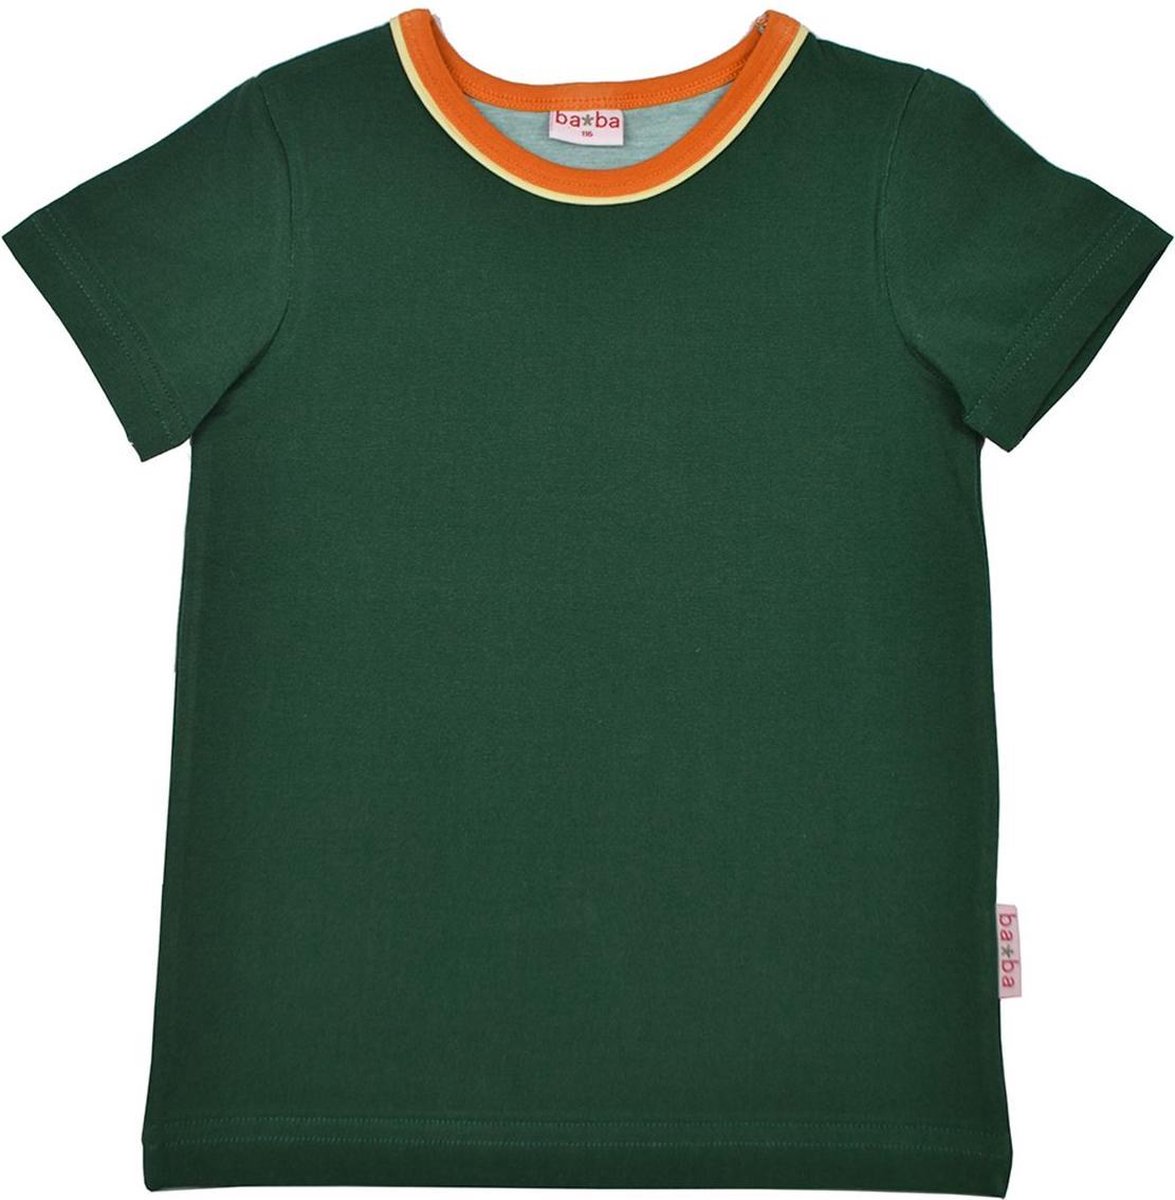 BA*BA Kidswear T-shirt Green Maat 122